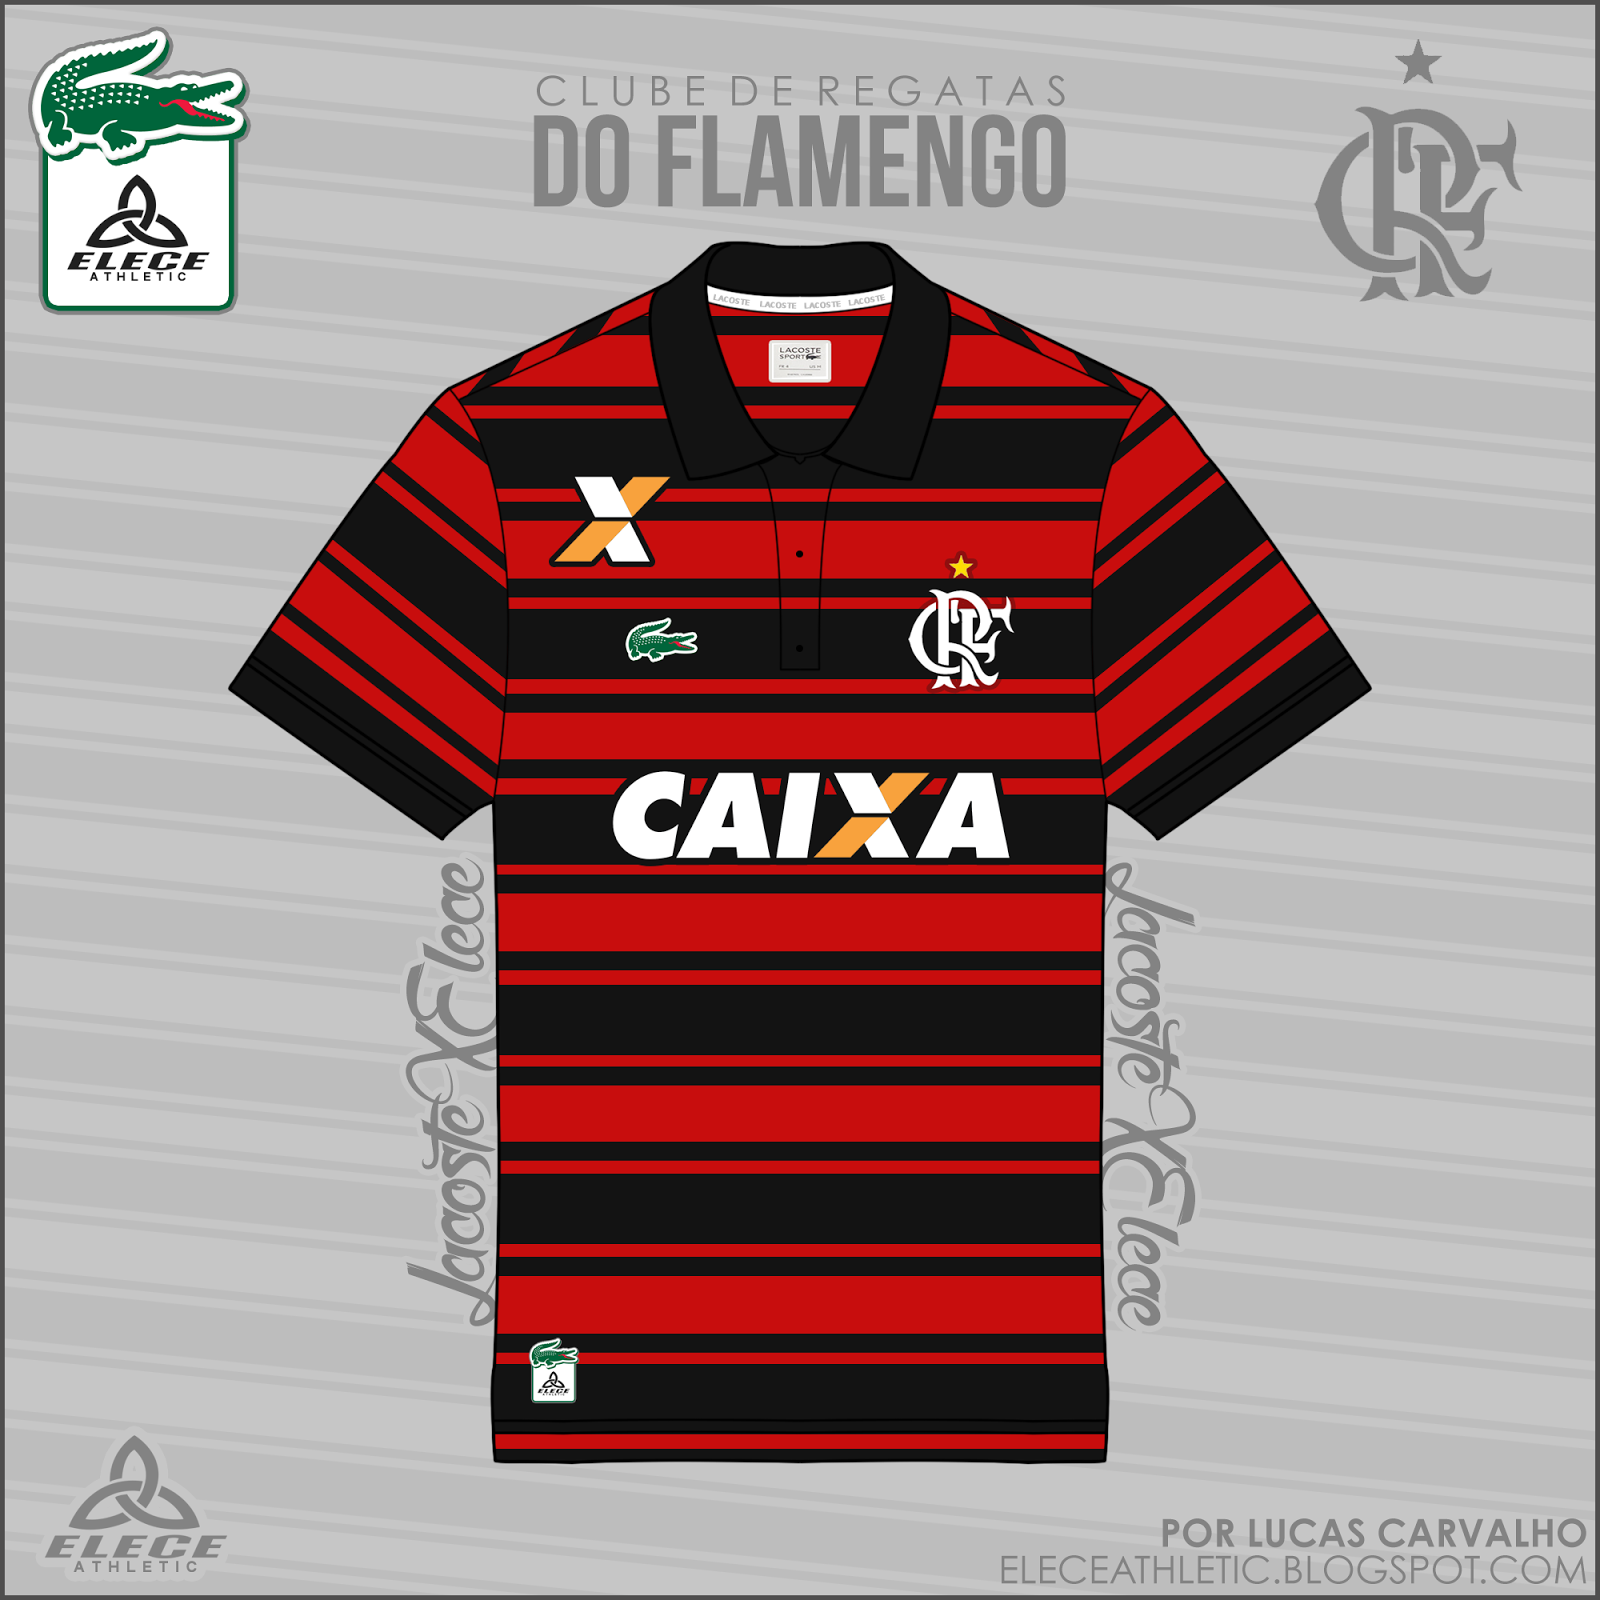 Flamengo.png